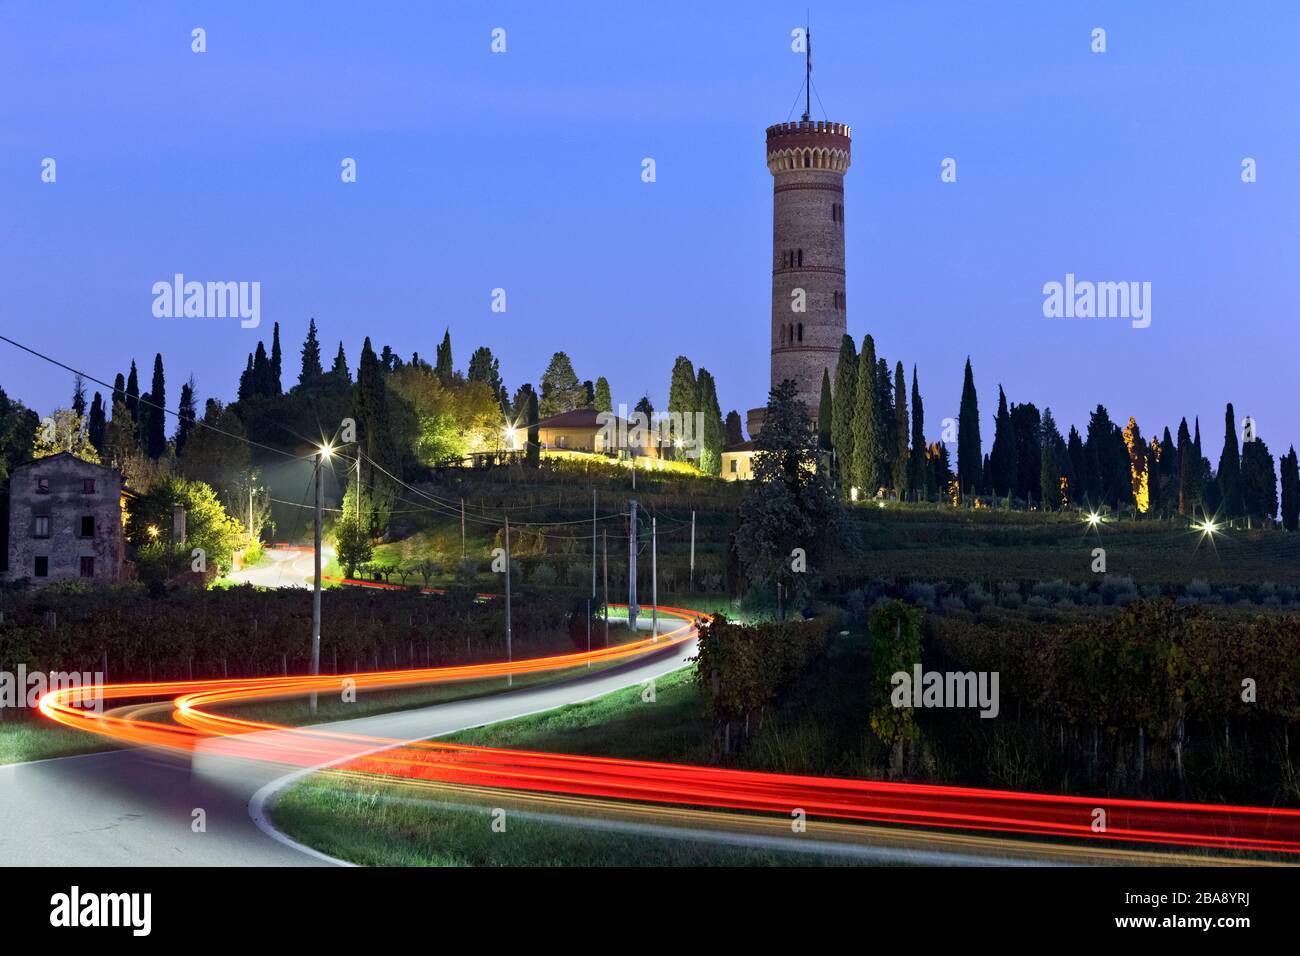 The monumental tower of San Martino della Battaglia celebrates the Italian Risorgimento. Desenzano del Garda, Brescia province, Lombardy, Italy. Stock Photo